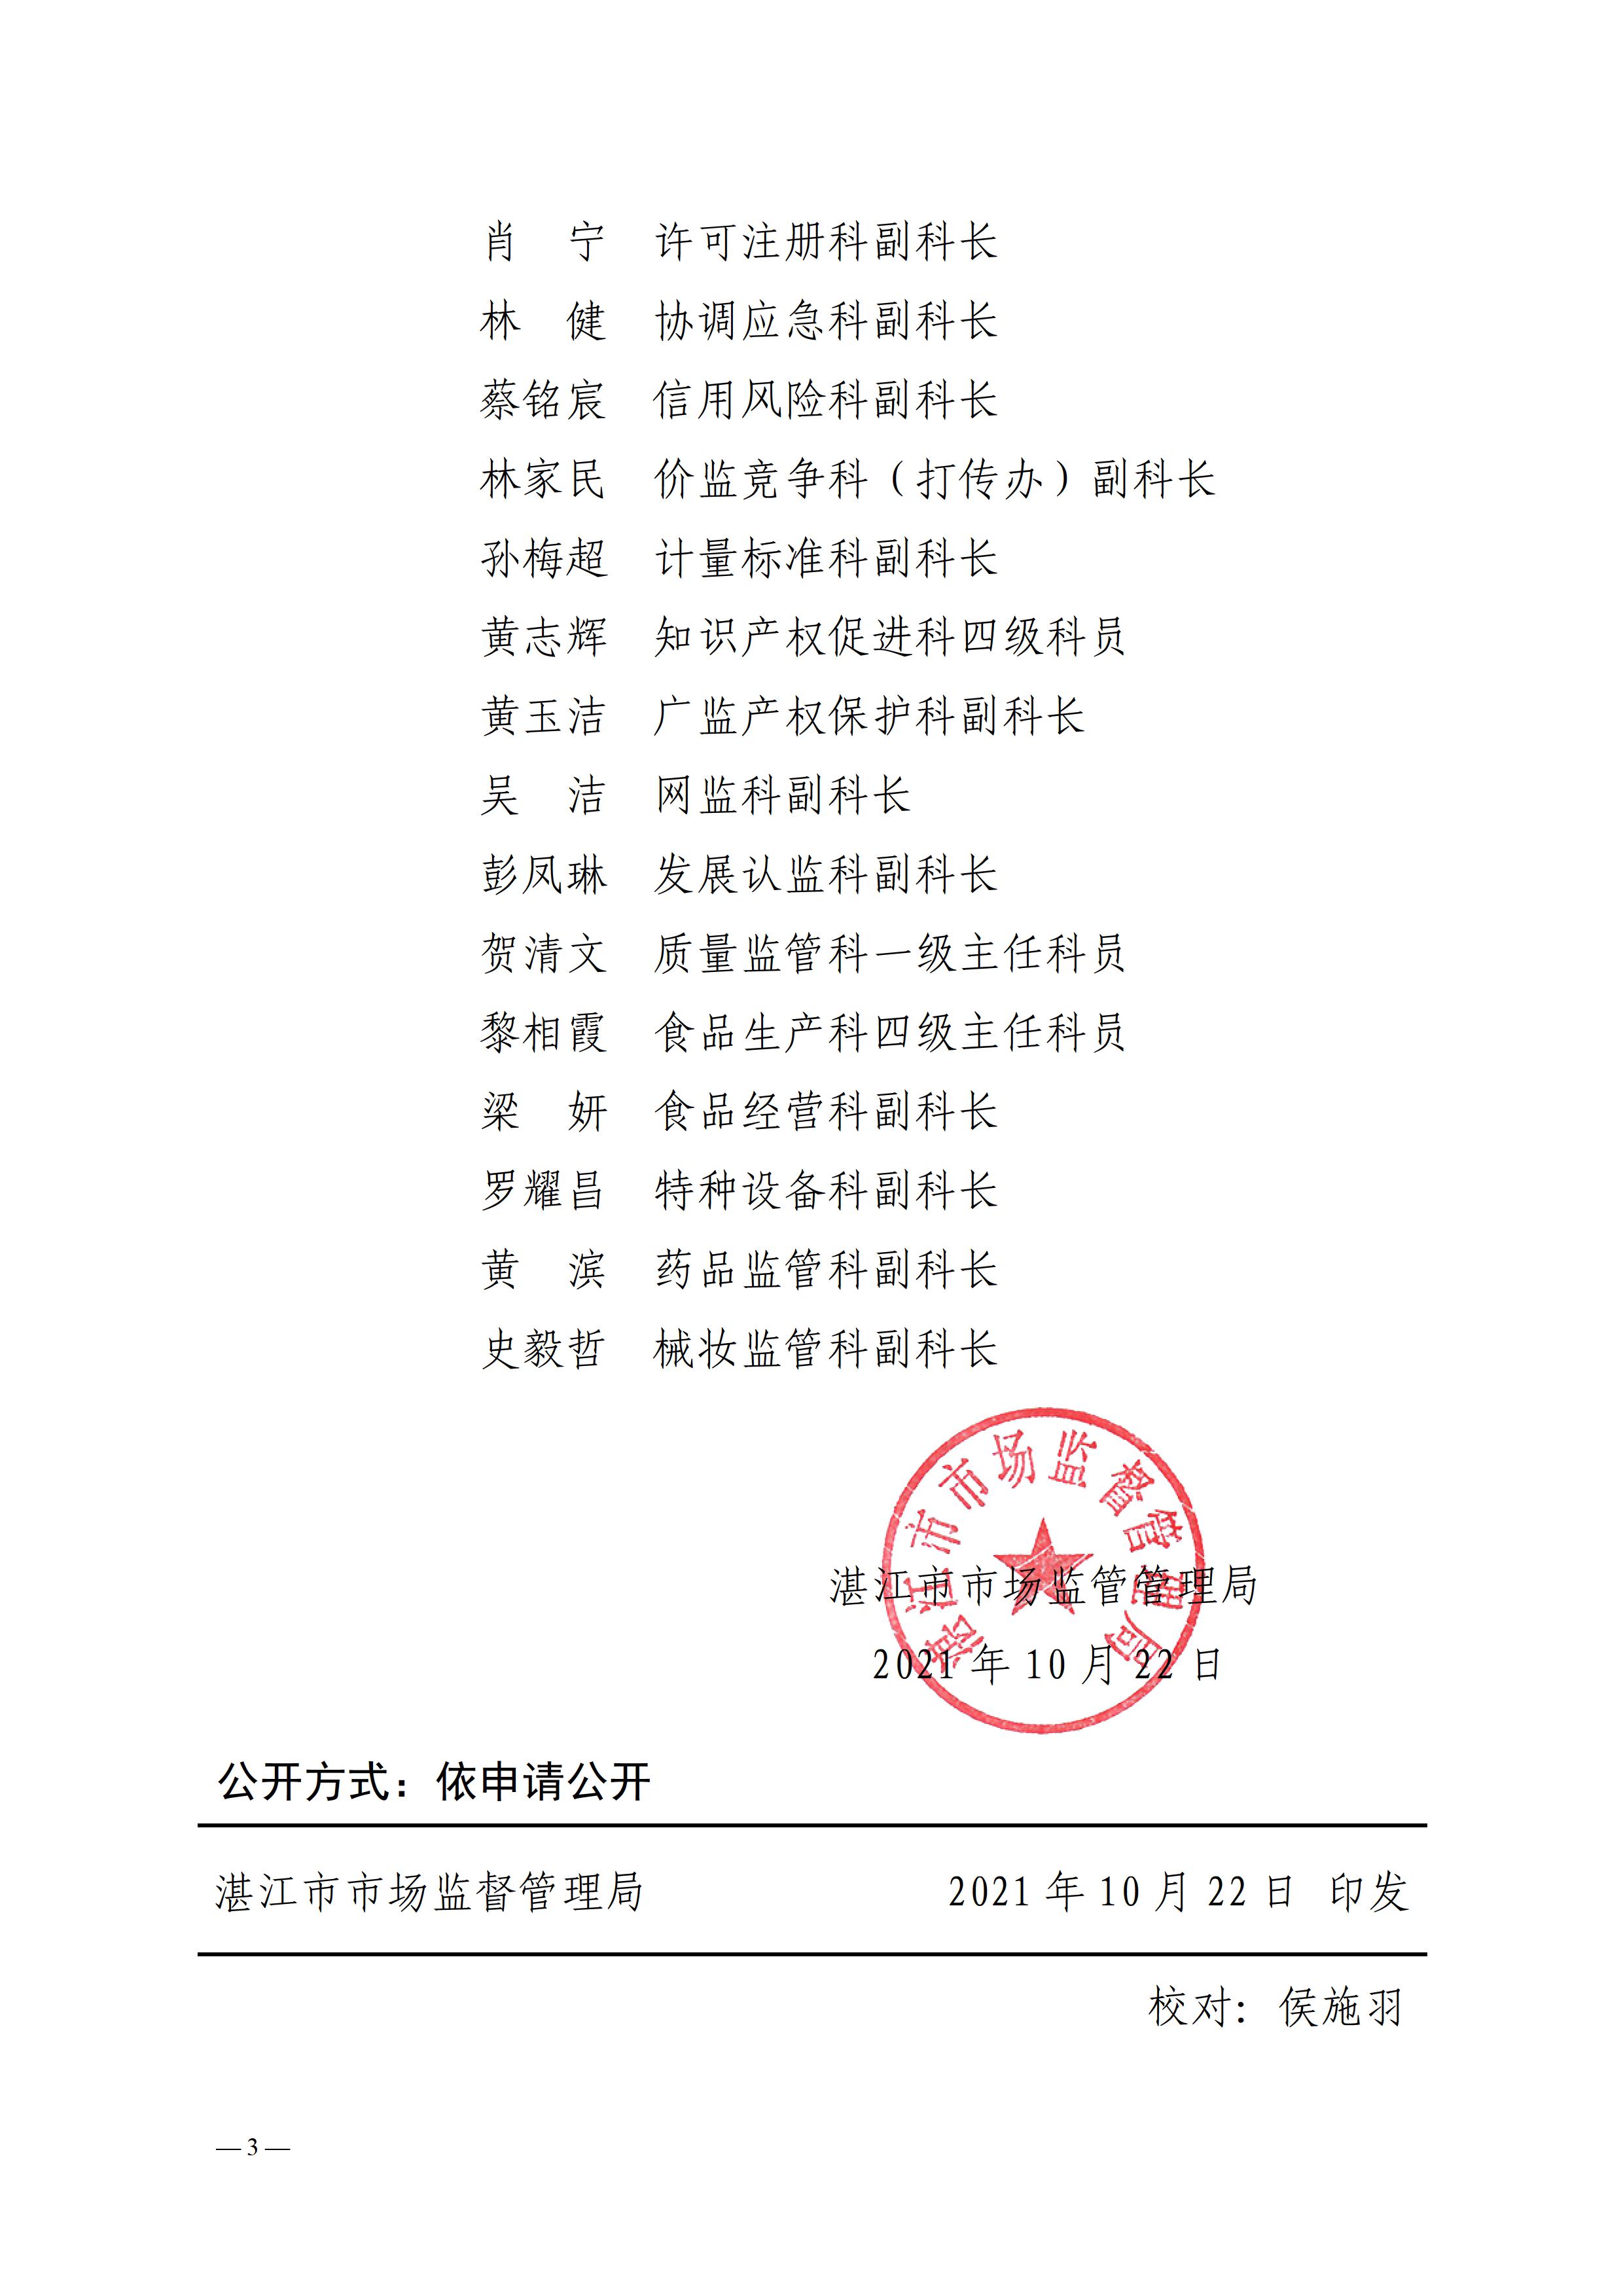 6、关于调整湛江市市场监督管理局政务公开领导小组及其办公室的通知 - 0003.jpg